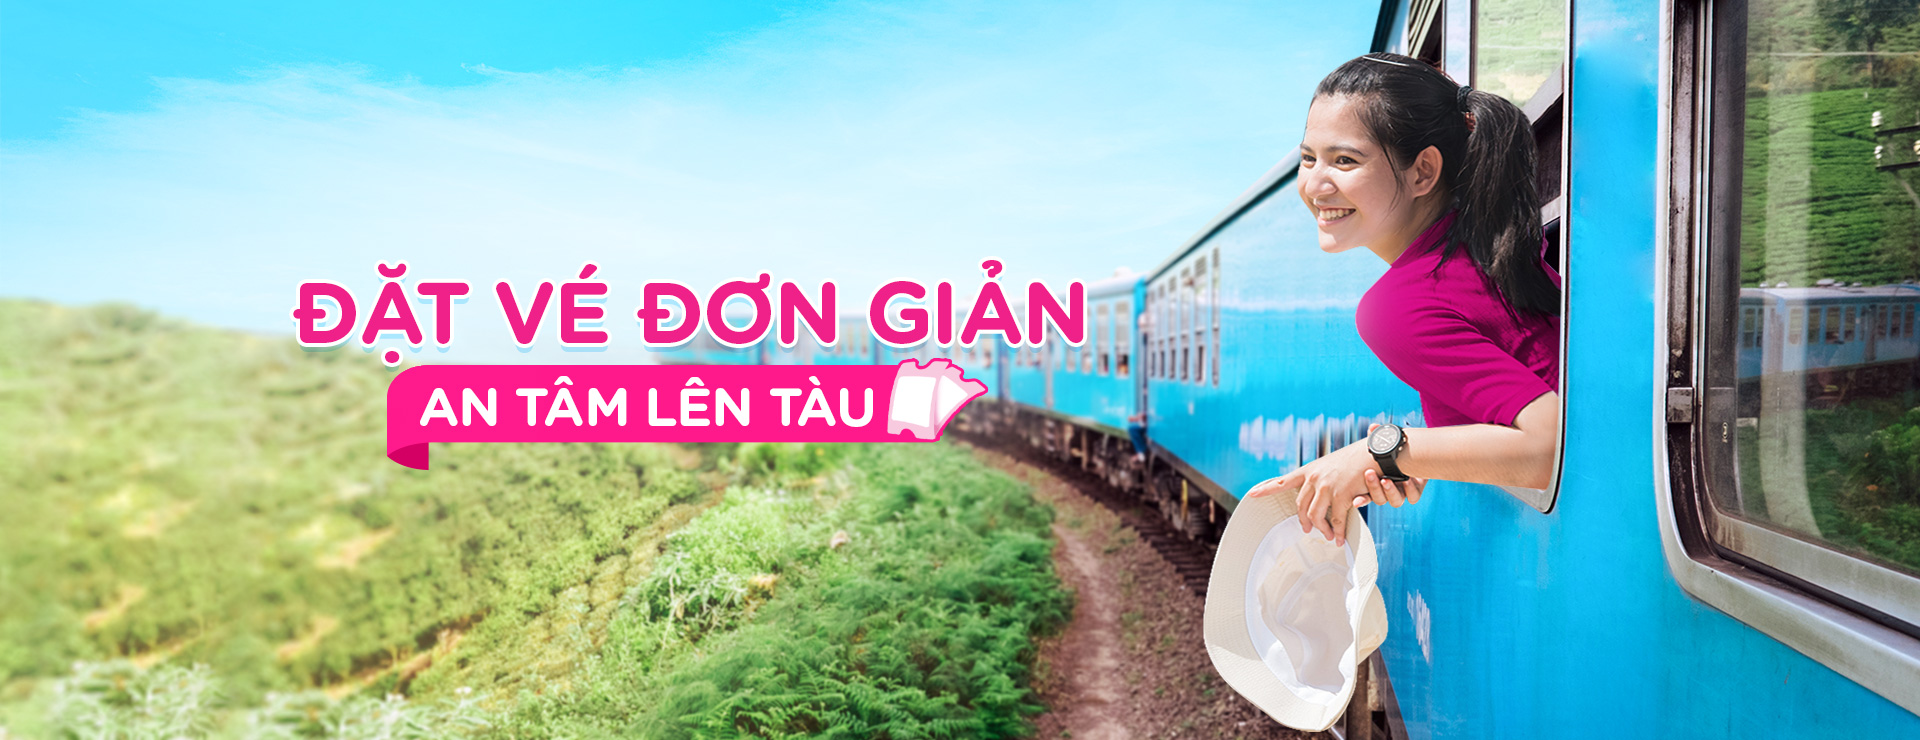 Dễ dàng đặt đi du lịch Nha Trang bằng tàu lửa trên app Momo